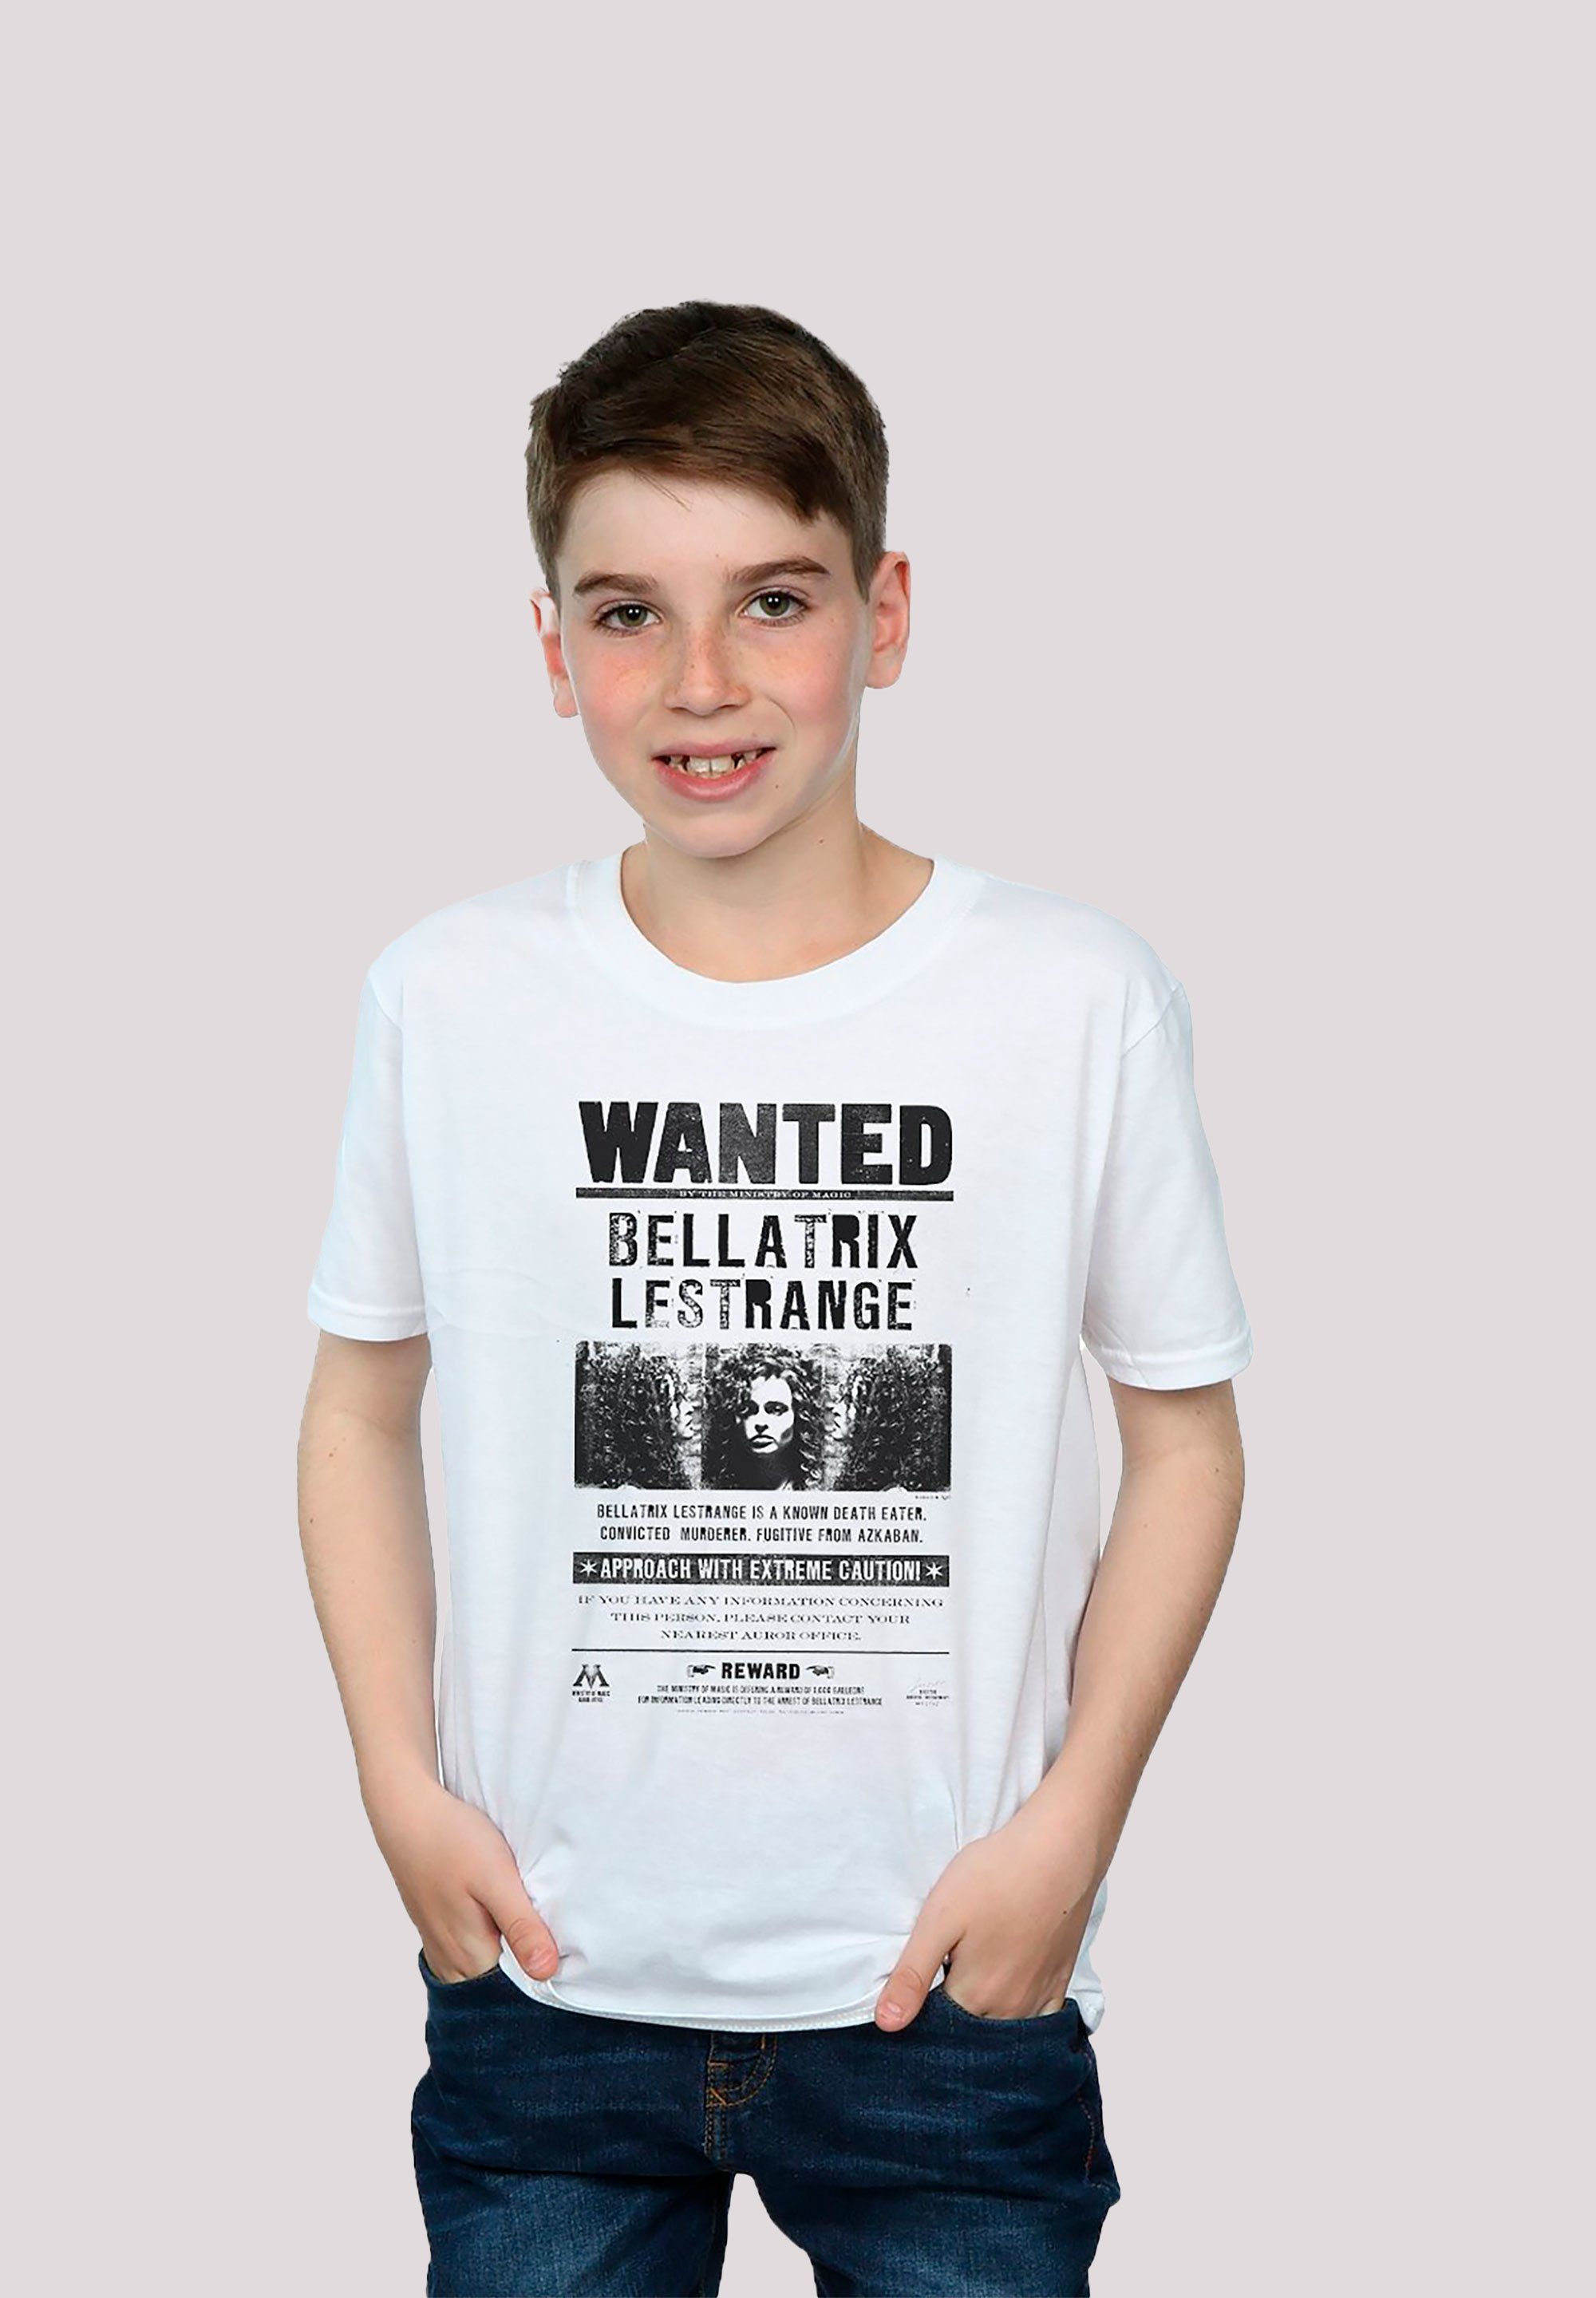 Print, Tragekomfort Bellatrix hohem Potter Lestrange T-Shirt Wanted weicher Sehr Harry Baumwollstoff mit F4NT4STIC